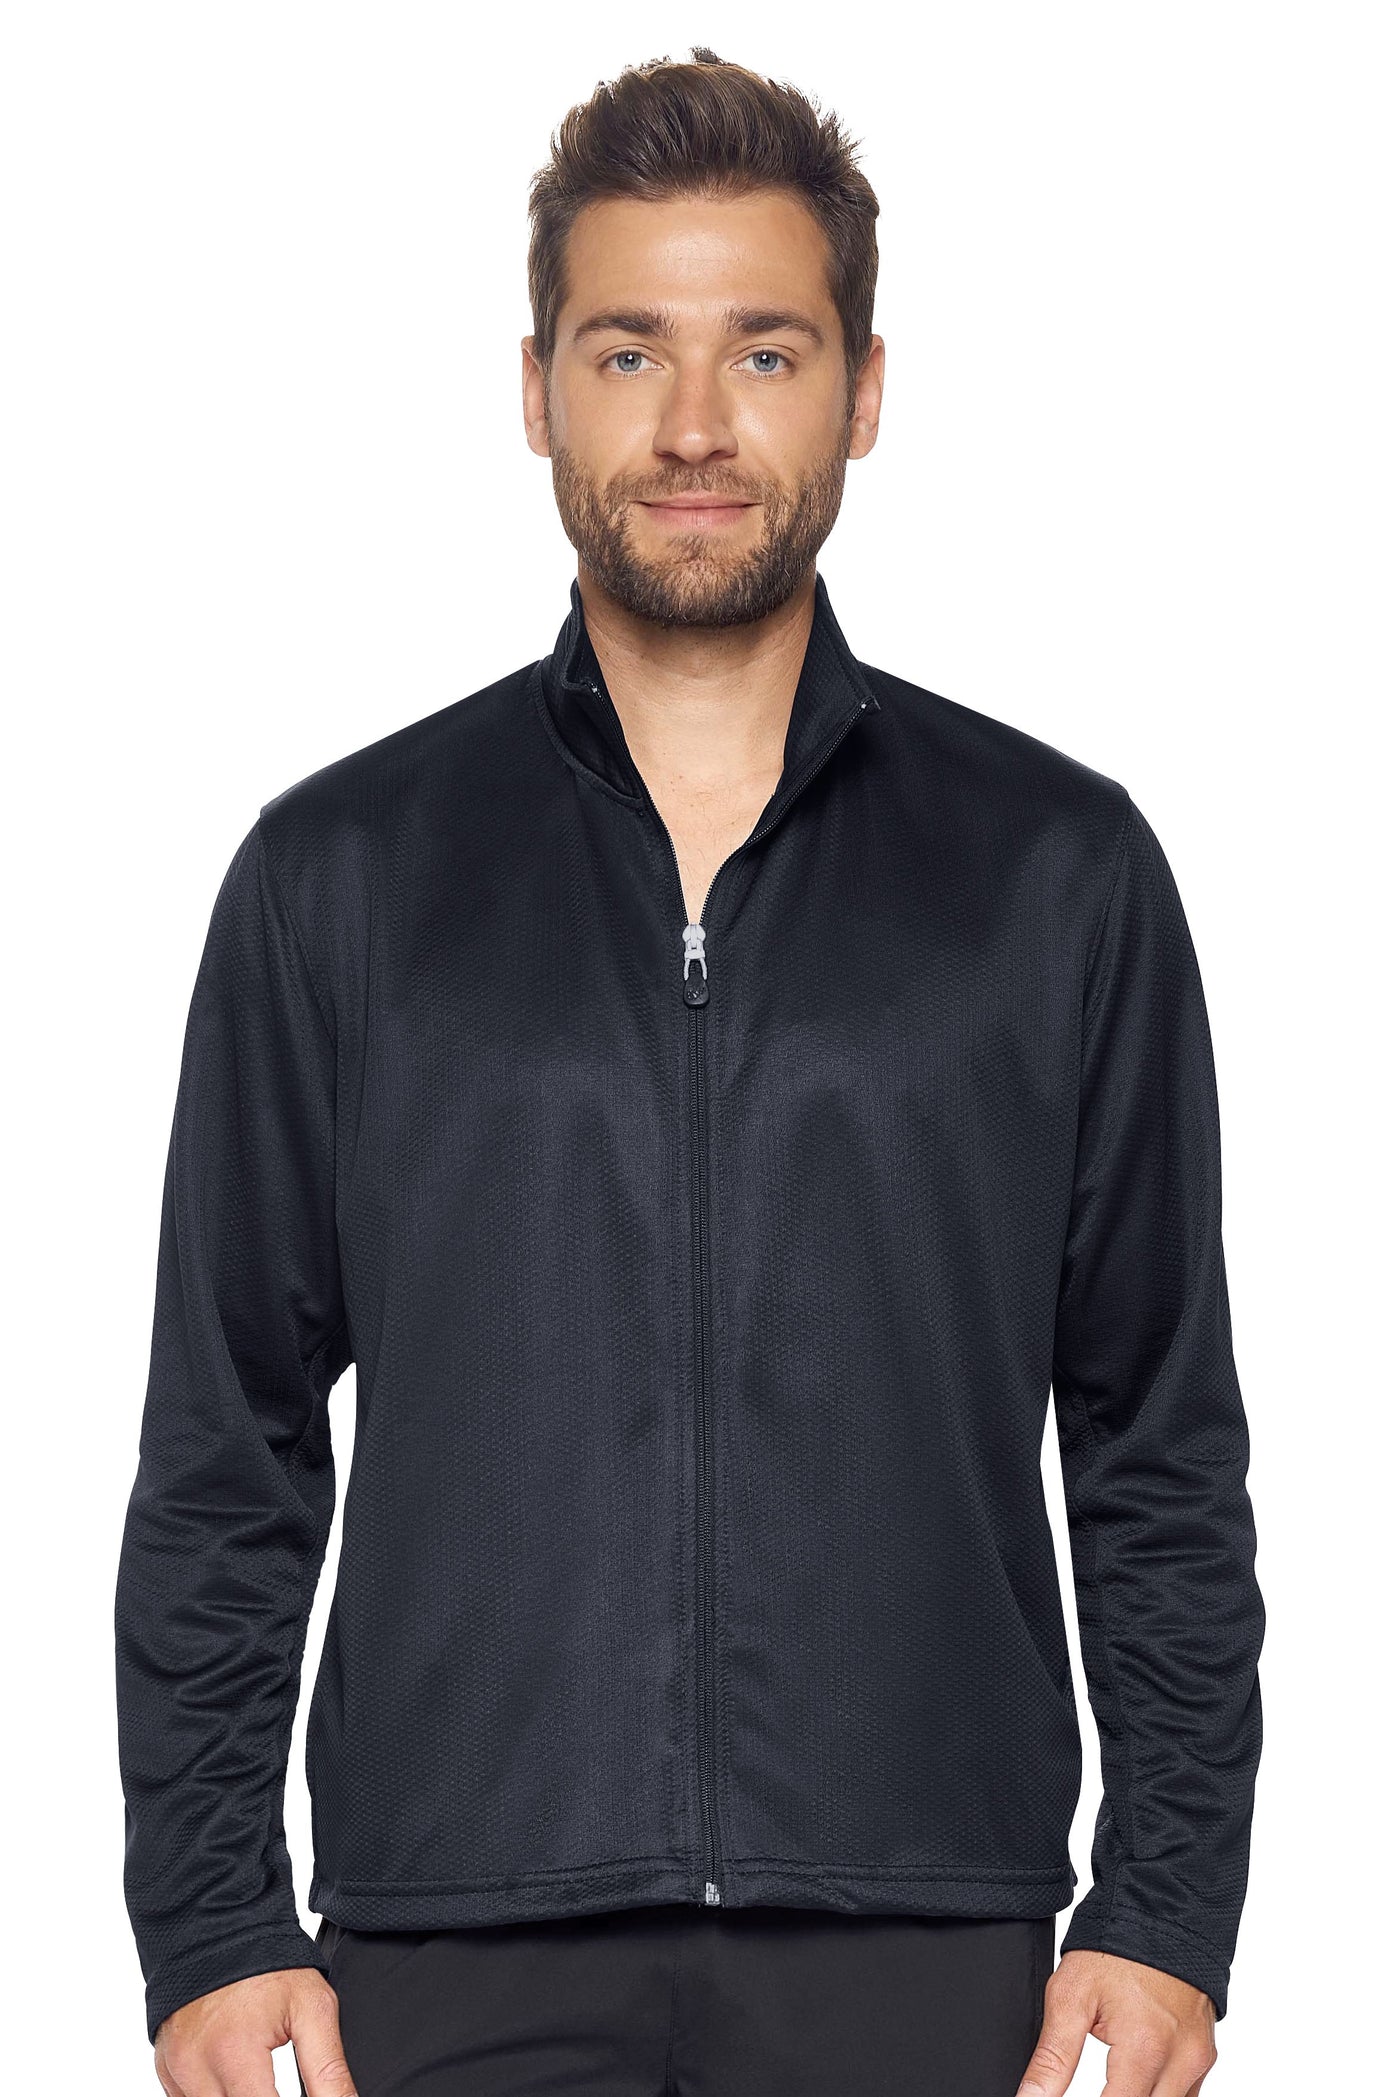 Expert Apparel Men's Sportsman Jacket in Black#color_black